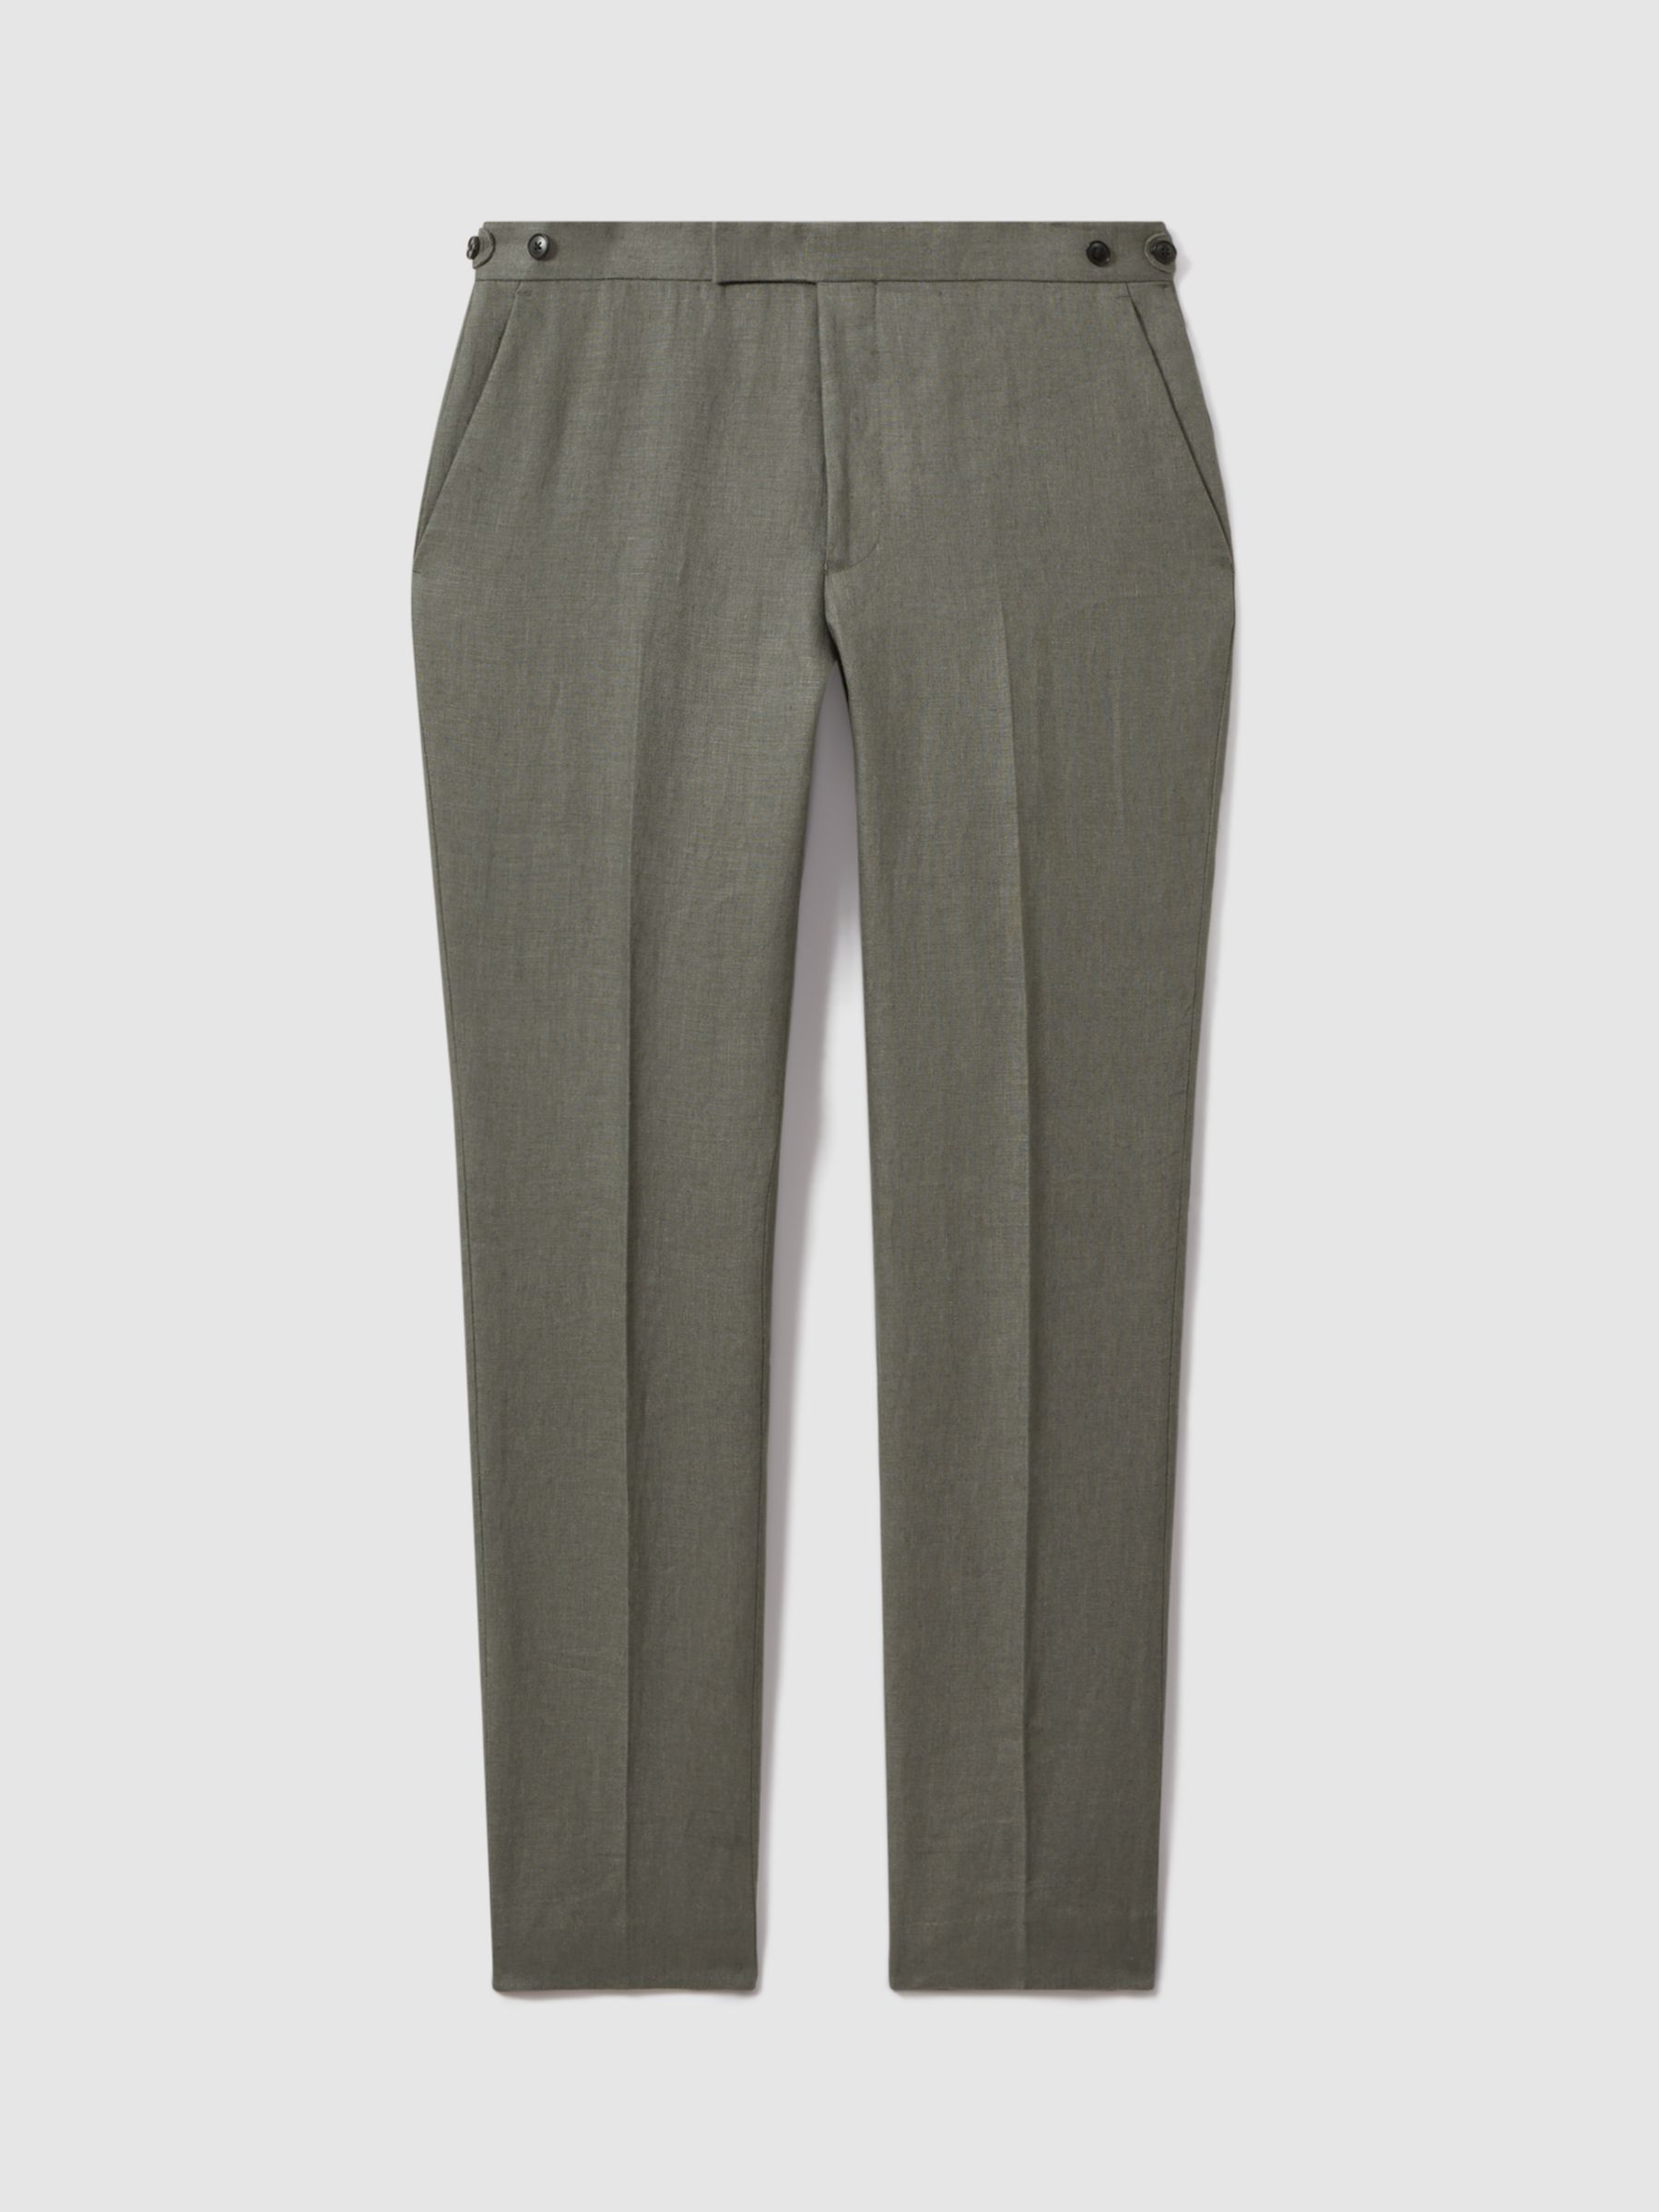 Reiss Halgas Tailored Linen Trousers, Dark Sage, 28R